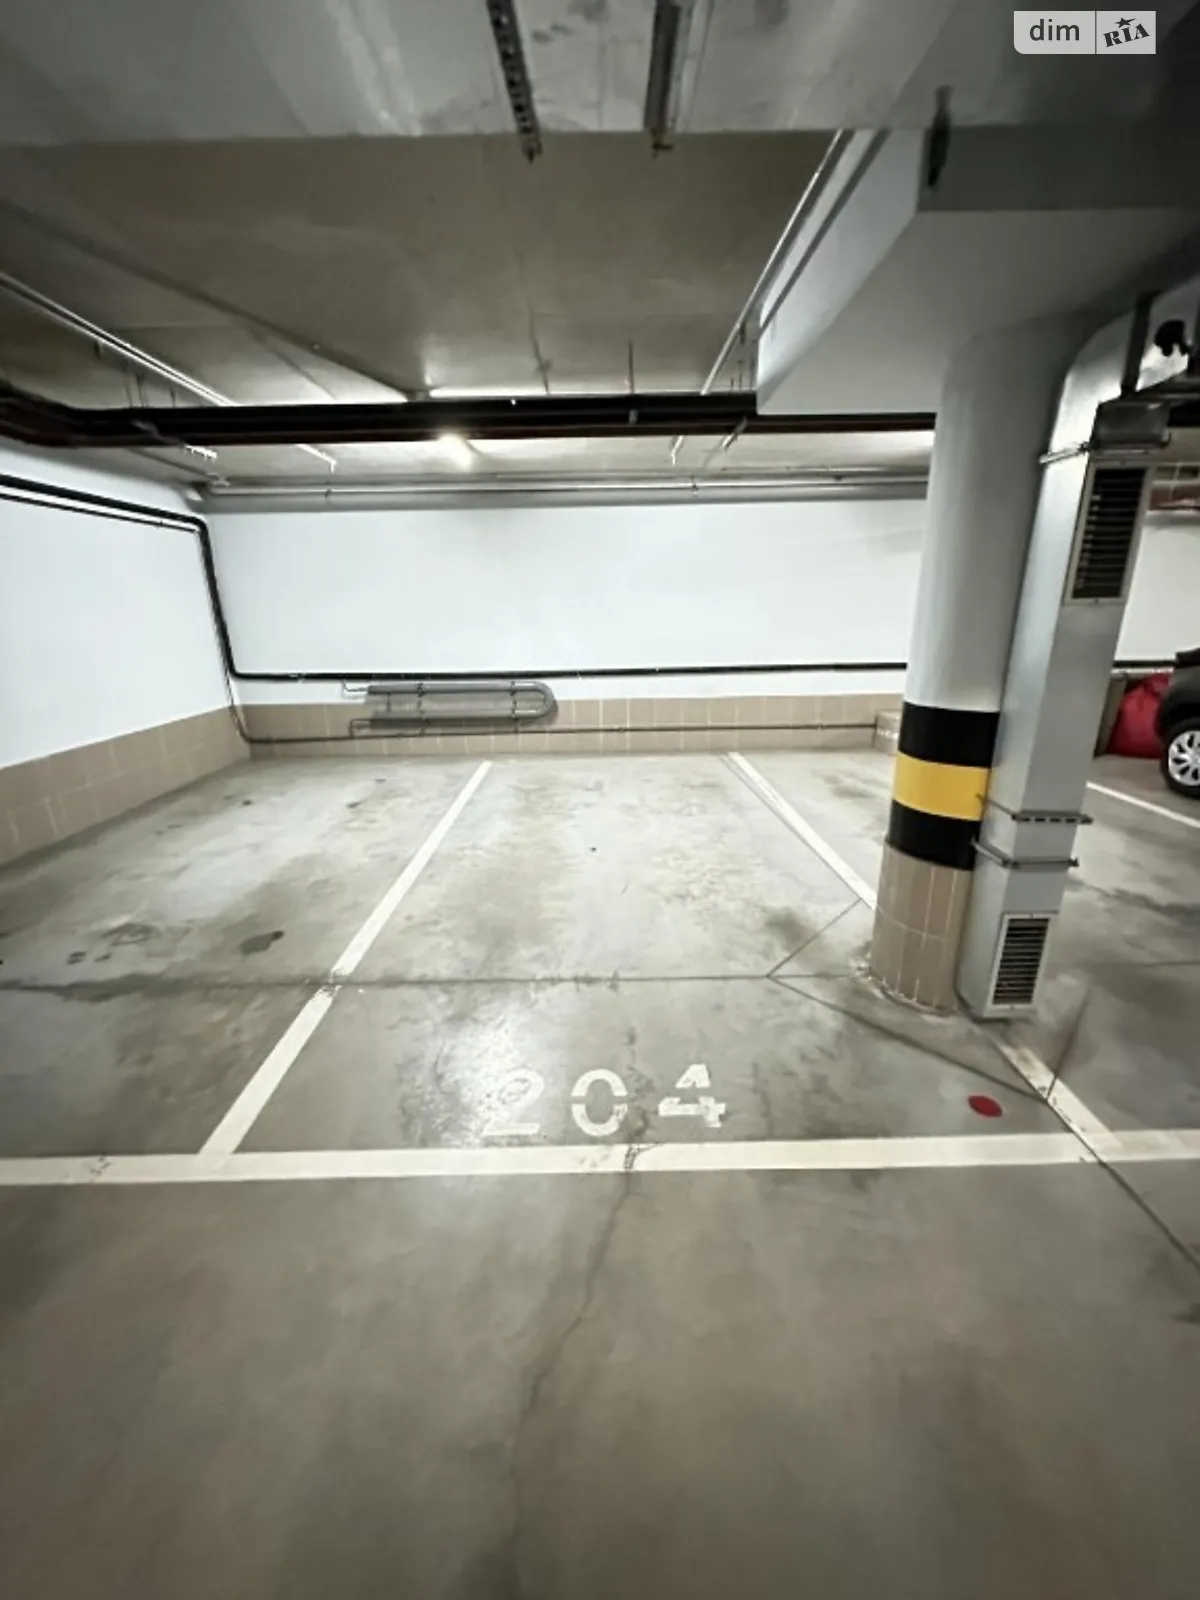 Продается подземный паркинг под легковое авто на 15 кв. м, цена: 27000 $ - фото 1